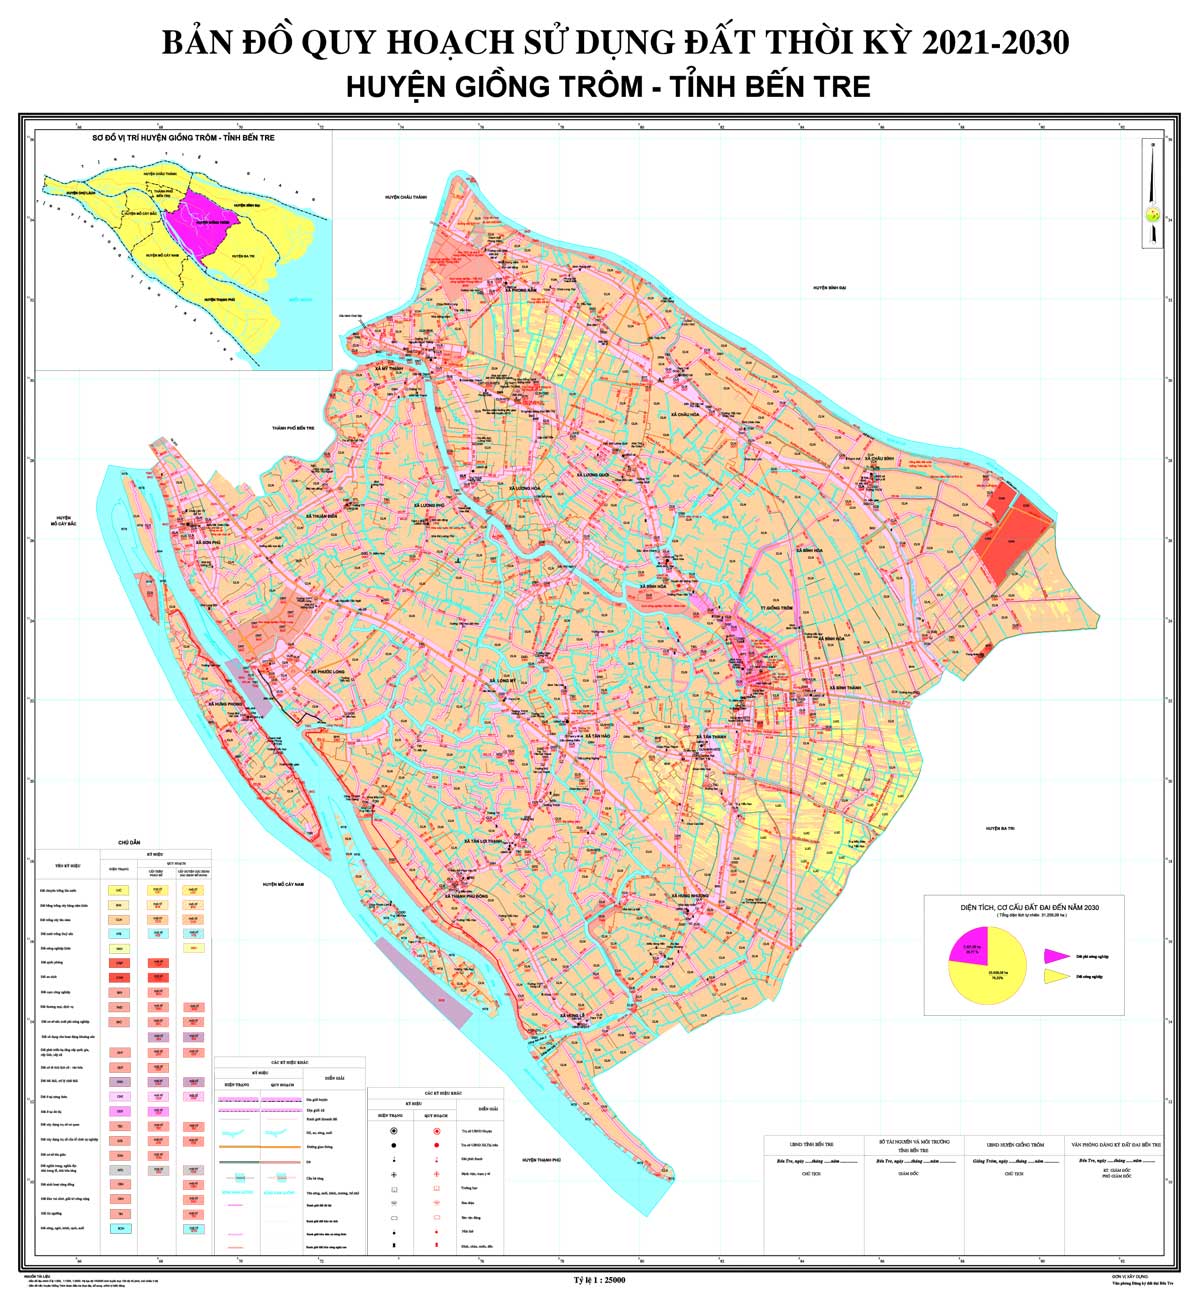 Bản đồ quy hoạch huyện Giồng Trôm tỉnh Bến Tre